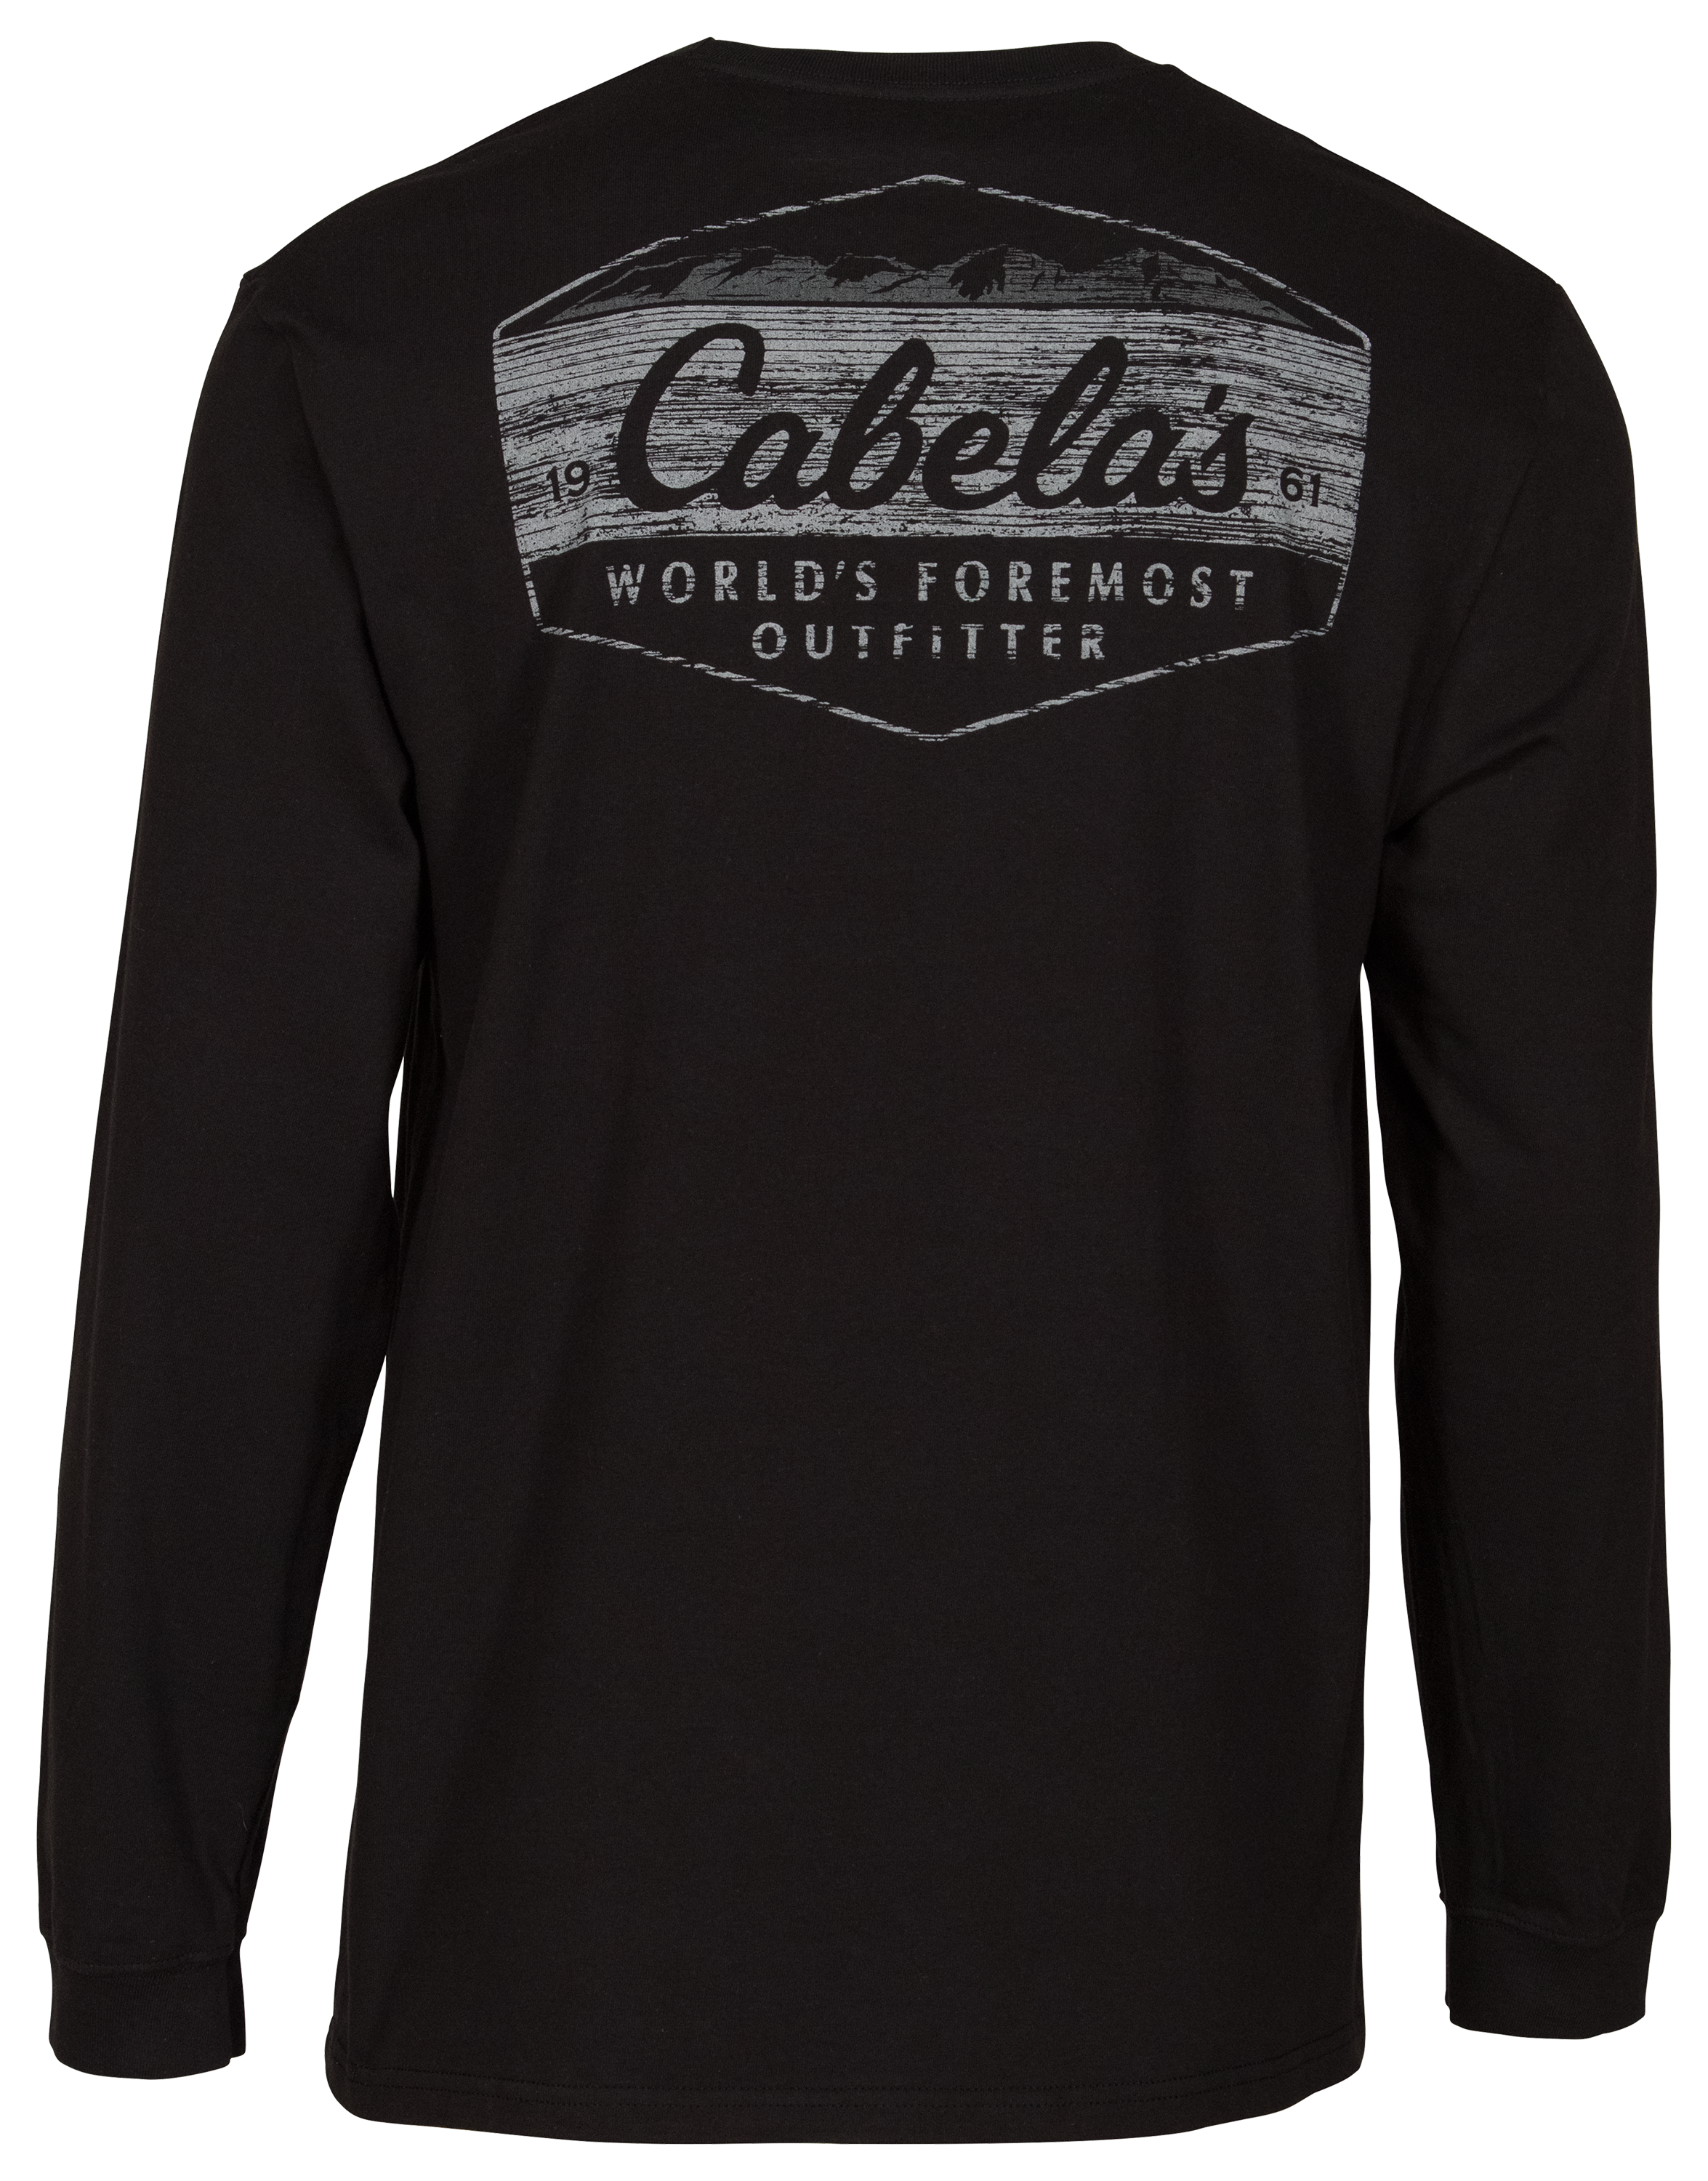 Cabela's Lockup Long-Sleeve T-Shirt for Men - Black-20 - S